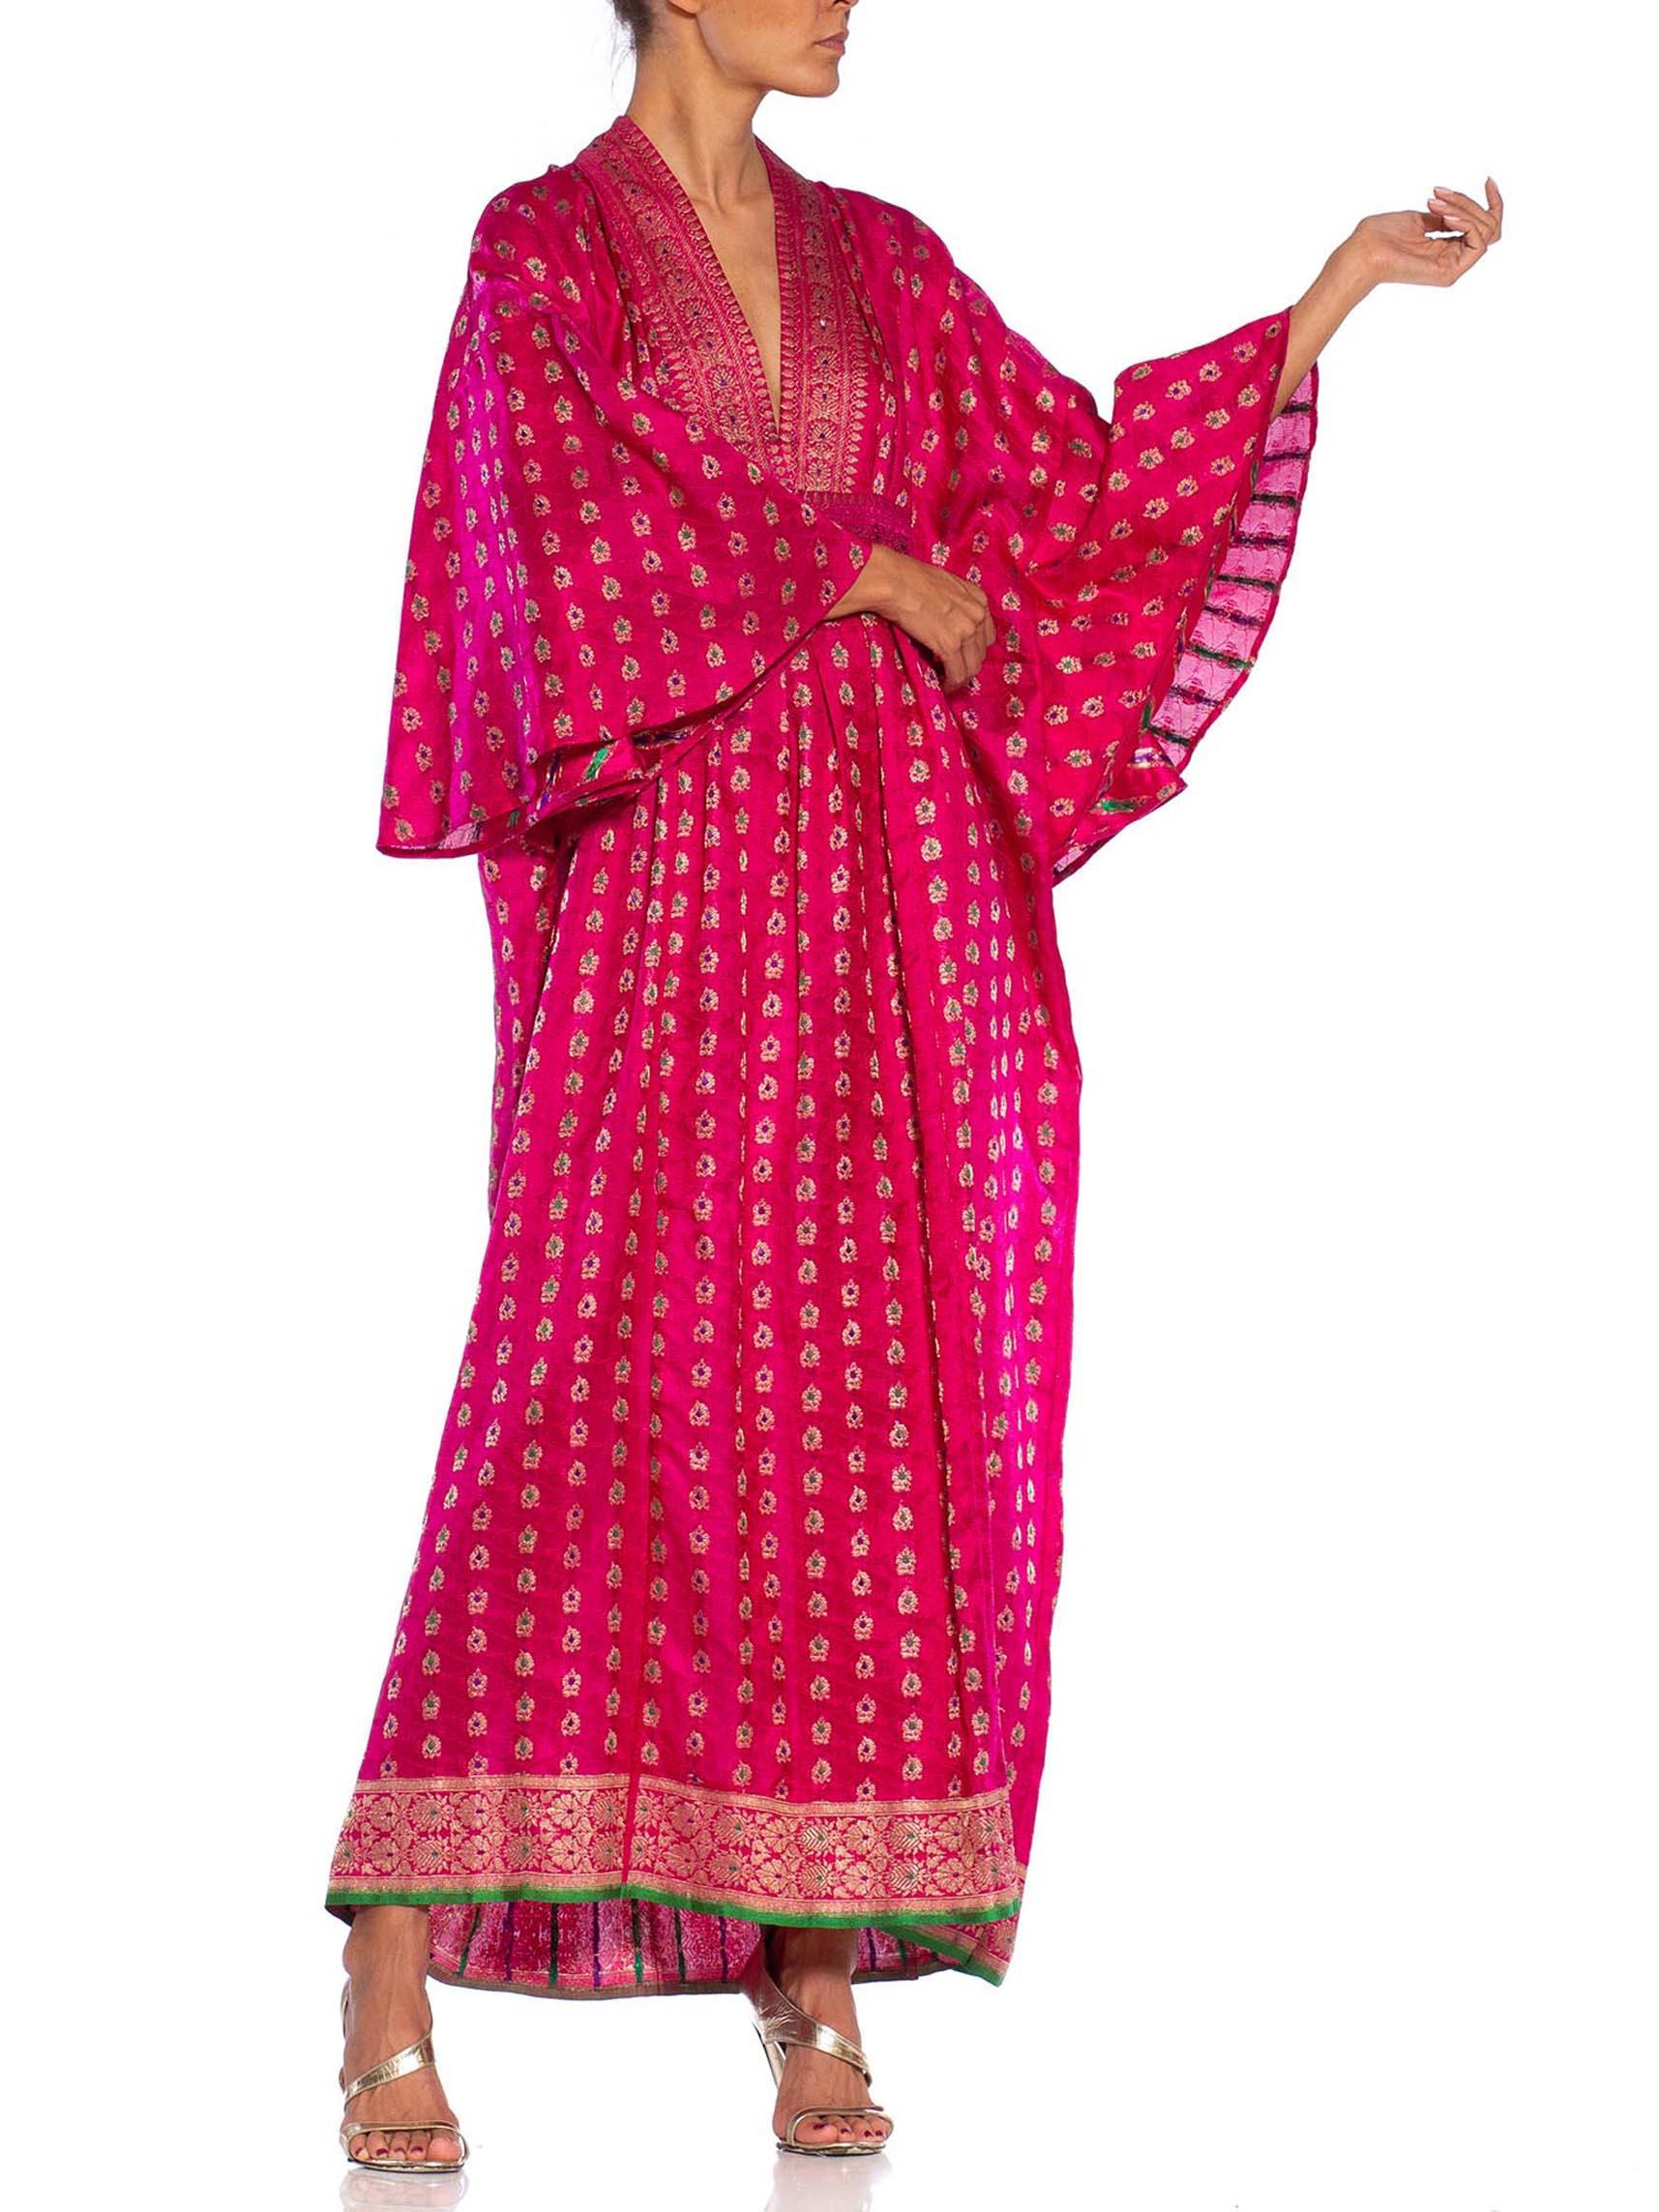 Women's MORPHEW COLLECTION Pink Metallic Silk Kaftan Made From Vintage Saris